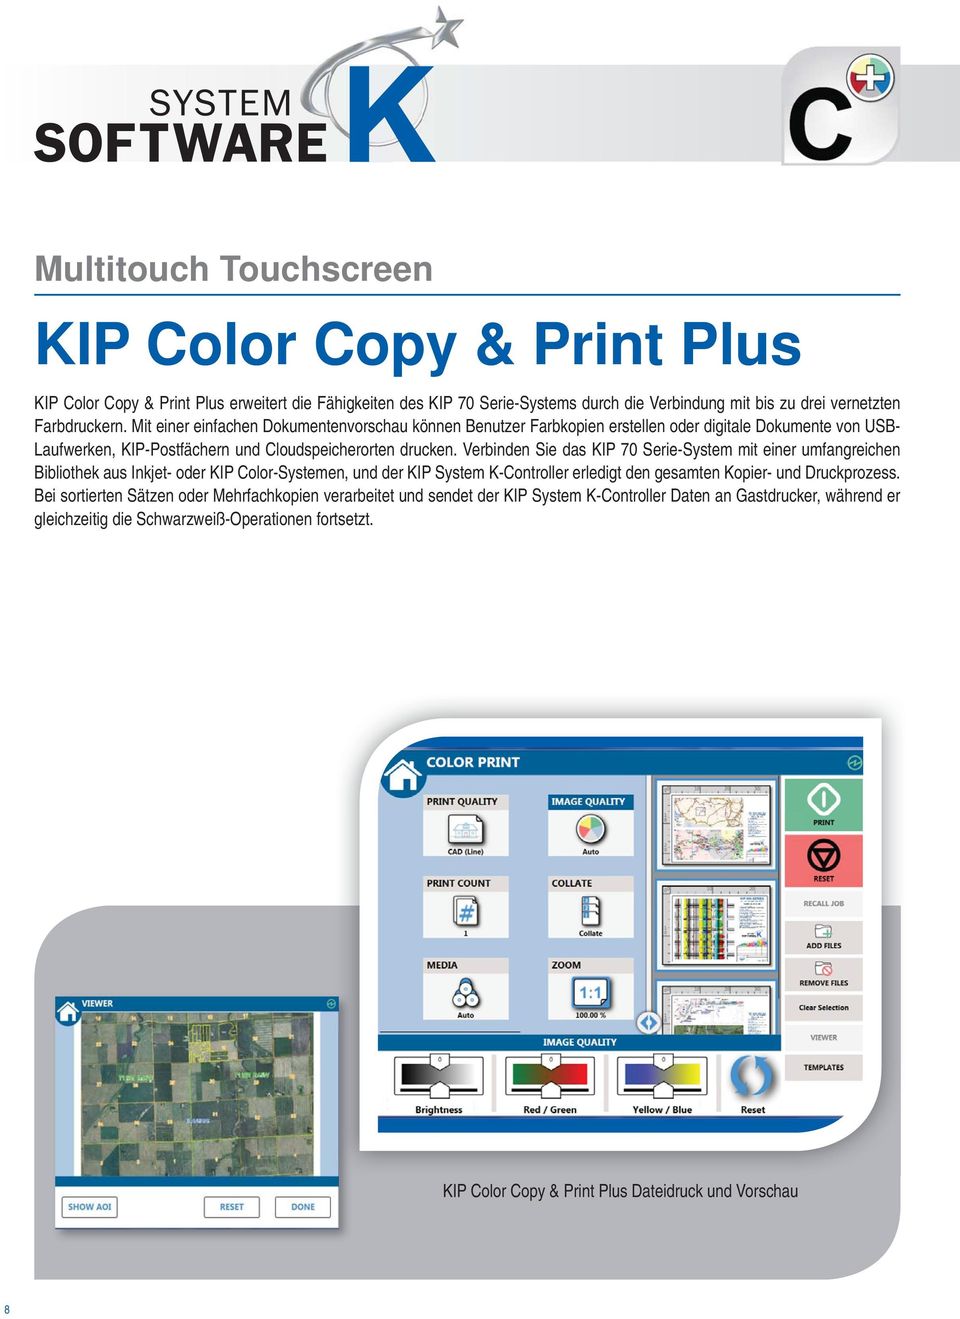 Verbinden Sie das KIP 70 Serie-System mit einer umfangreichen Bibliothek aus Inkjet- oder KIP Color-Systemen, und der KIP System K-Controller erledigt den gesamten Kopier- und Druckprozess.